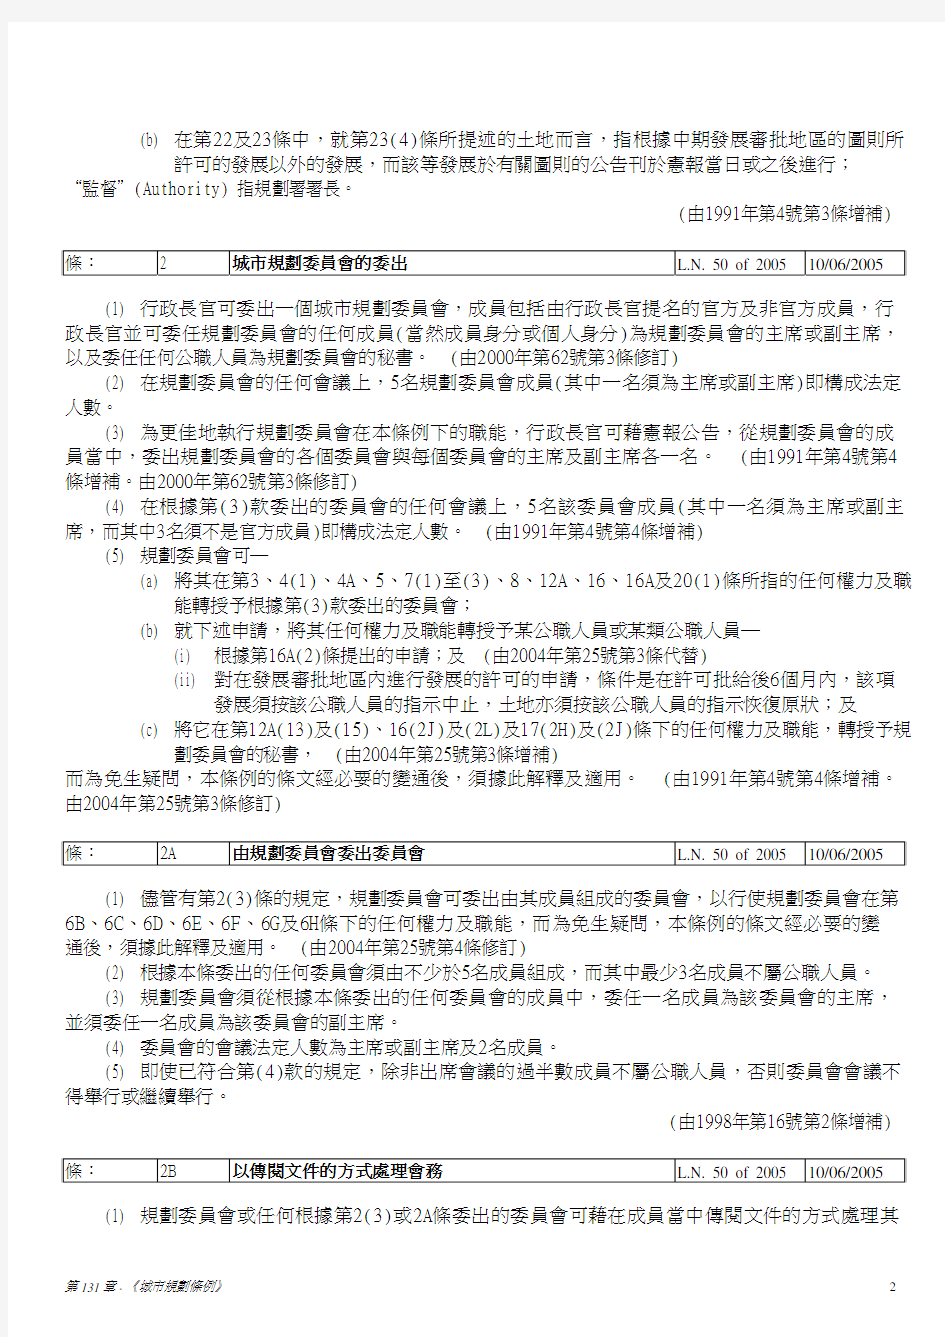 香港 - 城市规划条例 (中文)